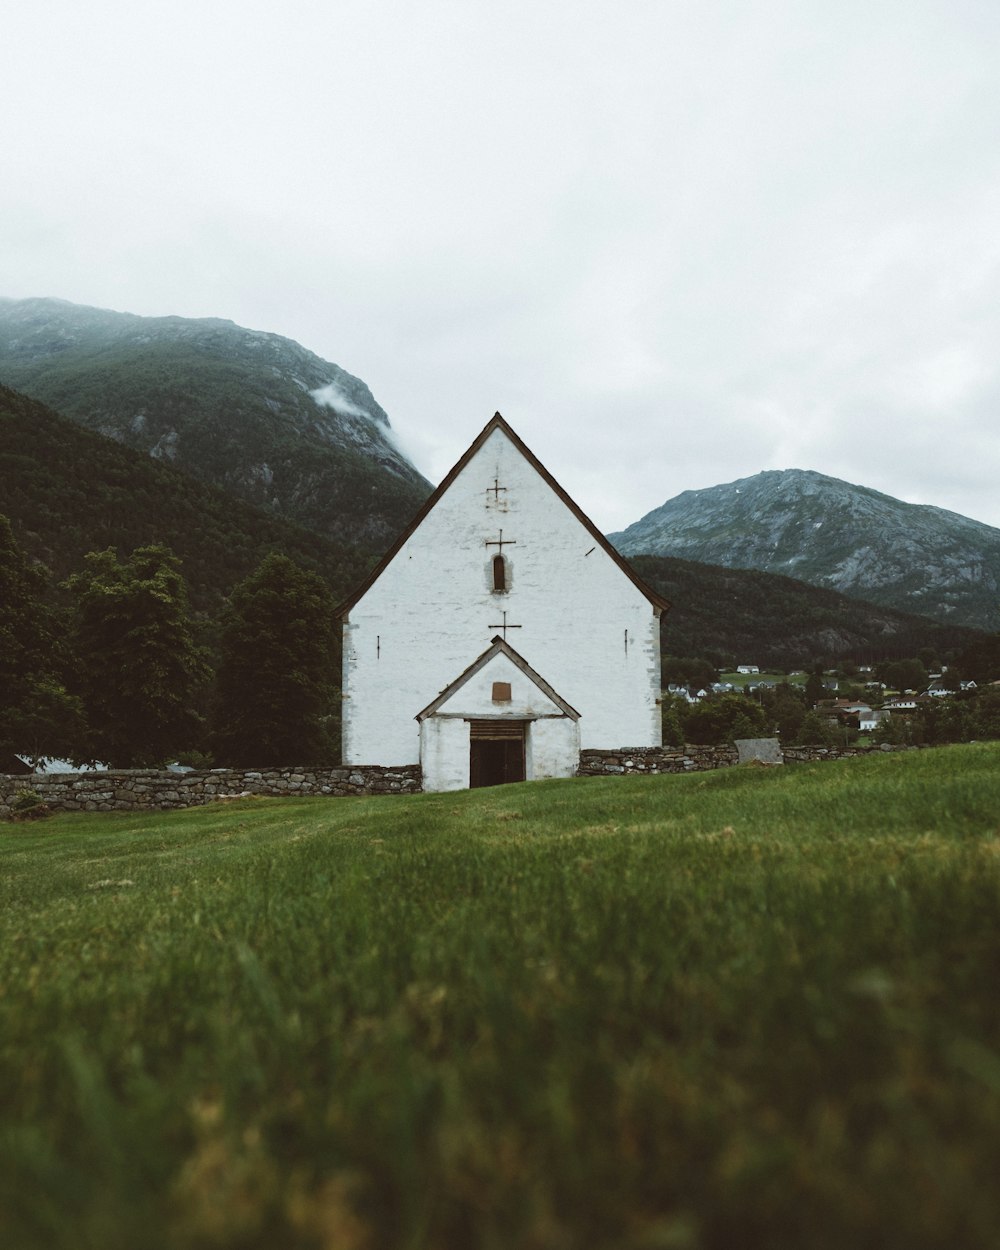 Igreja de concreto branco perto dos picos da montanha